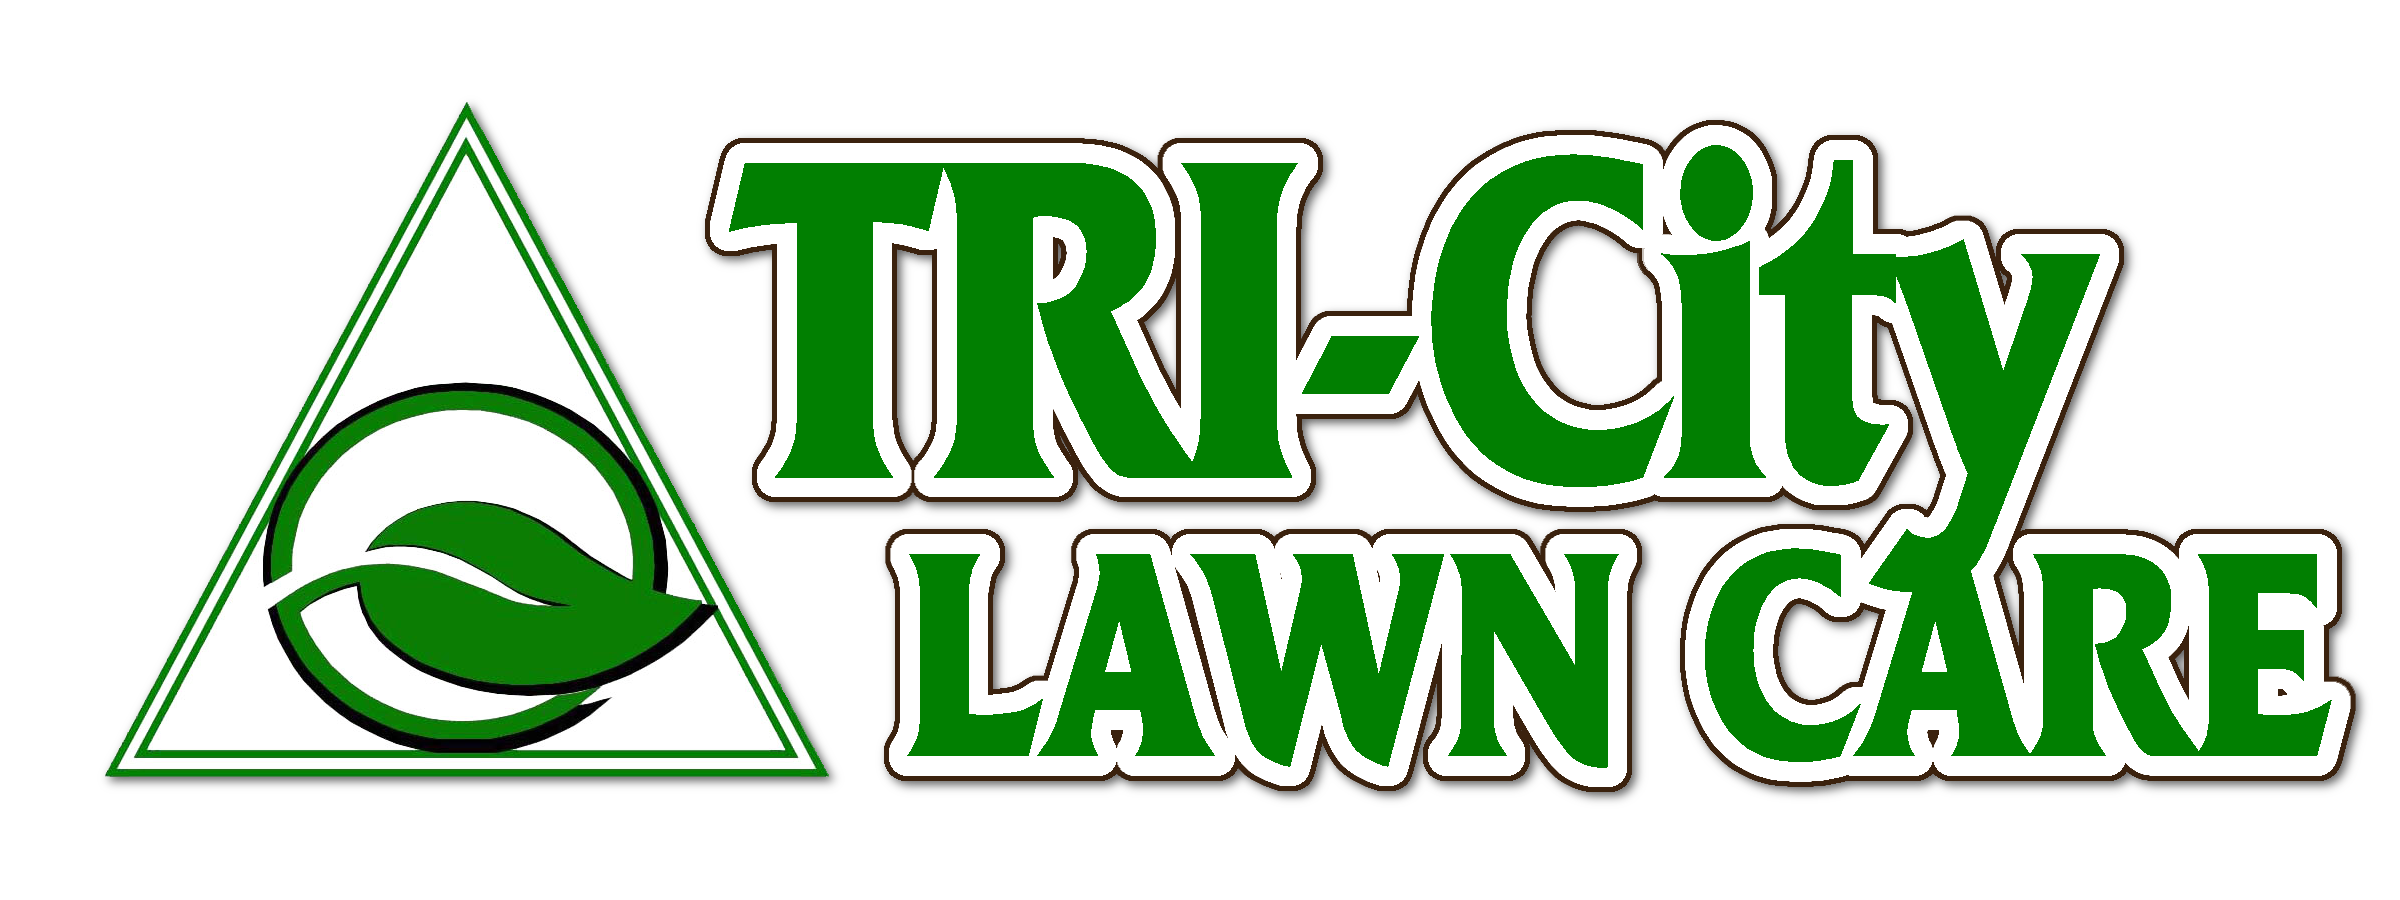 Tri-City Lawn Care Homepage